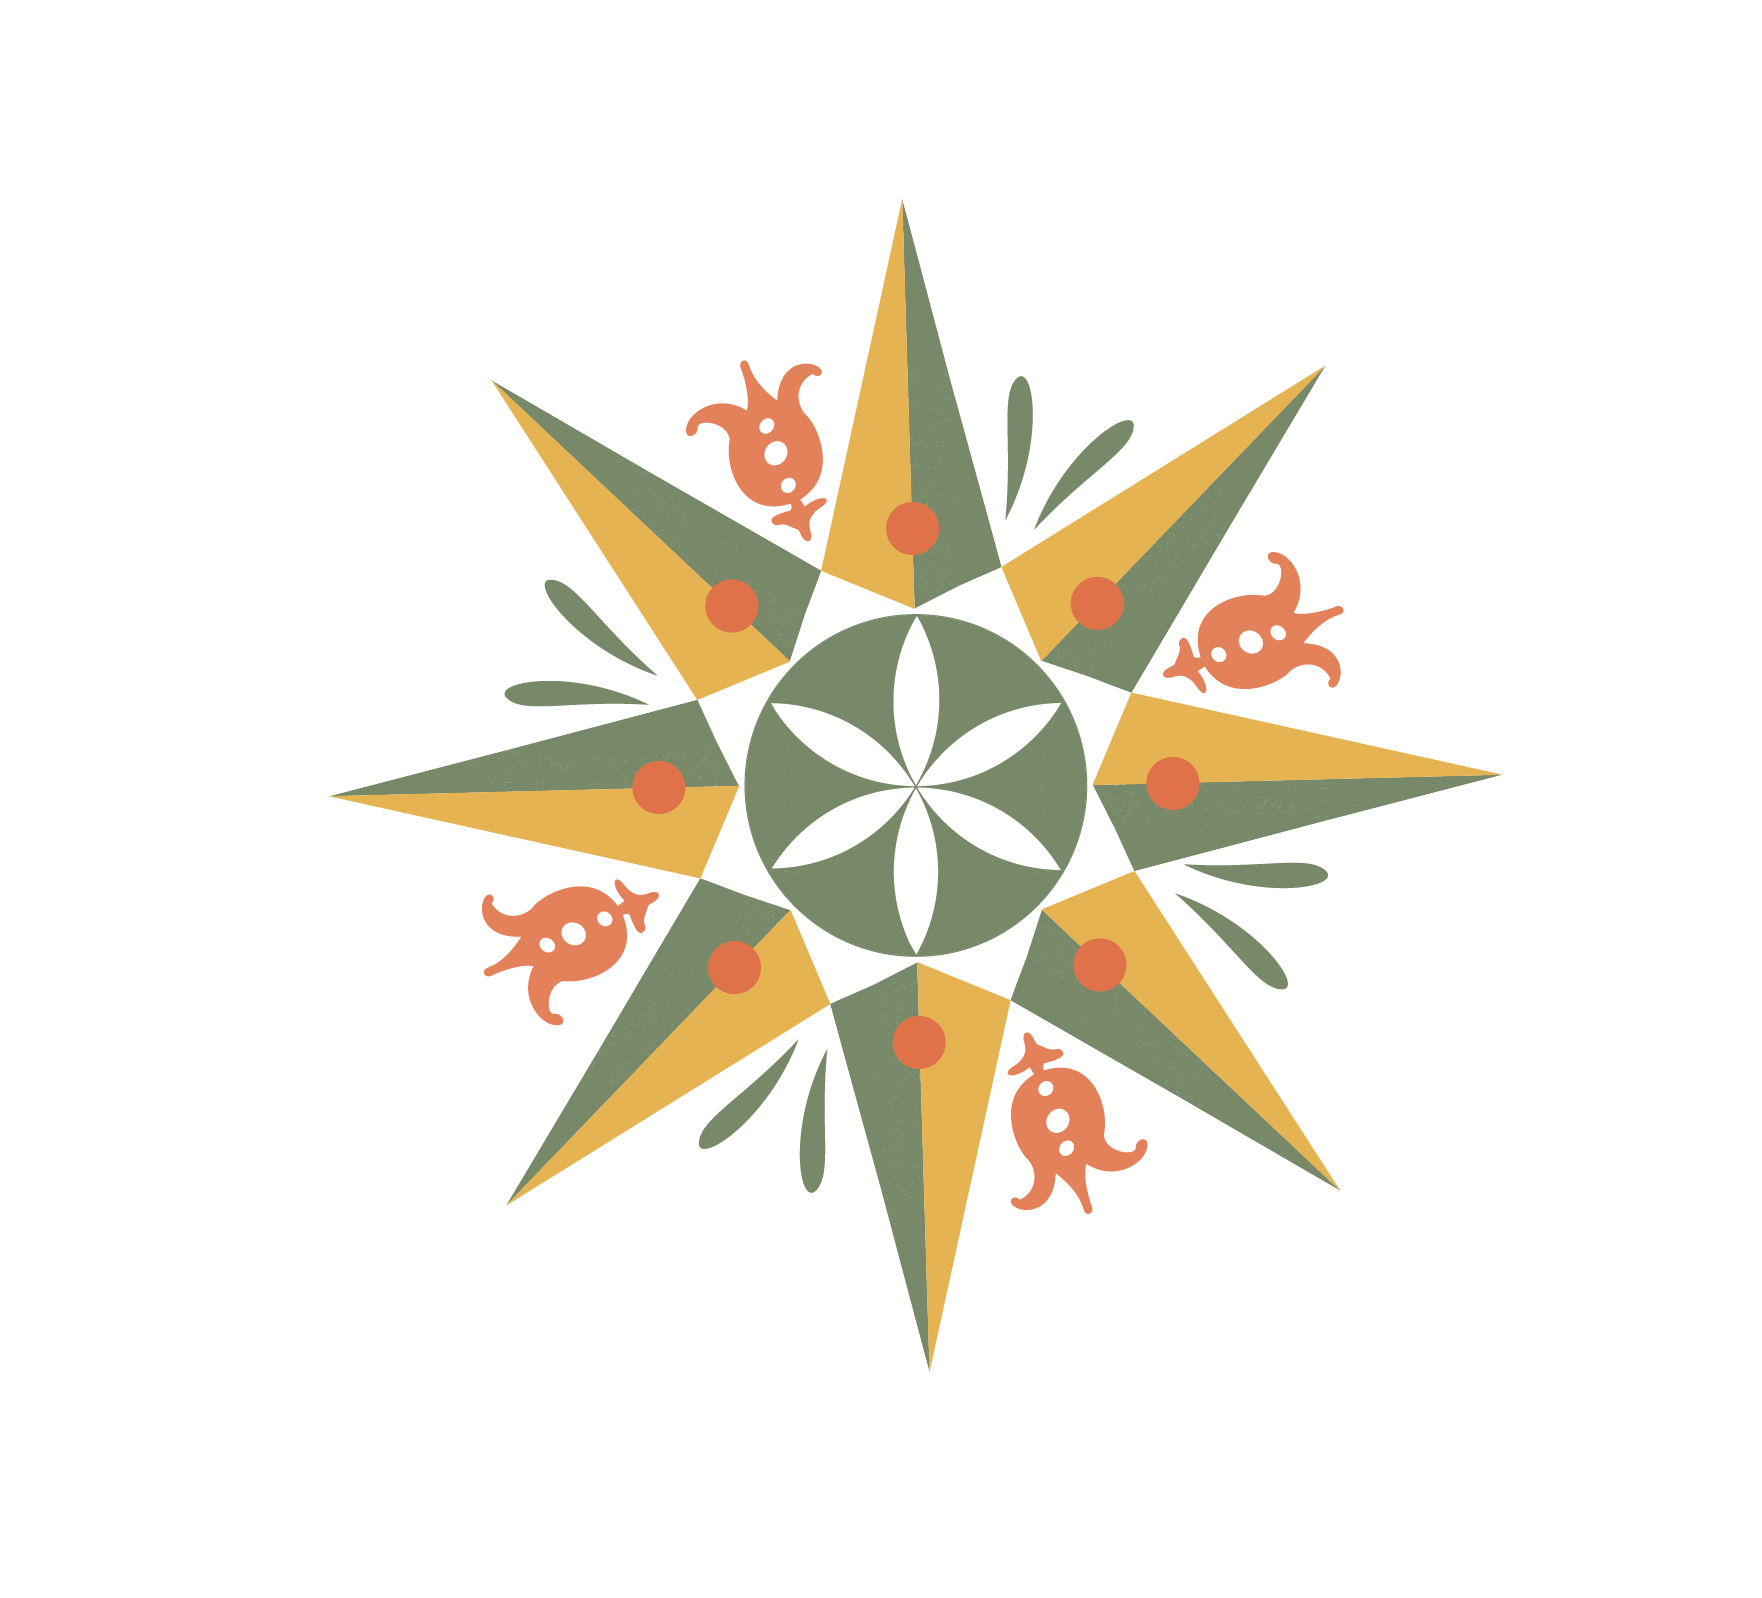 Kutztown Folk Festival